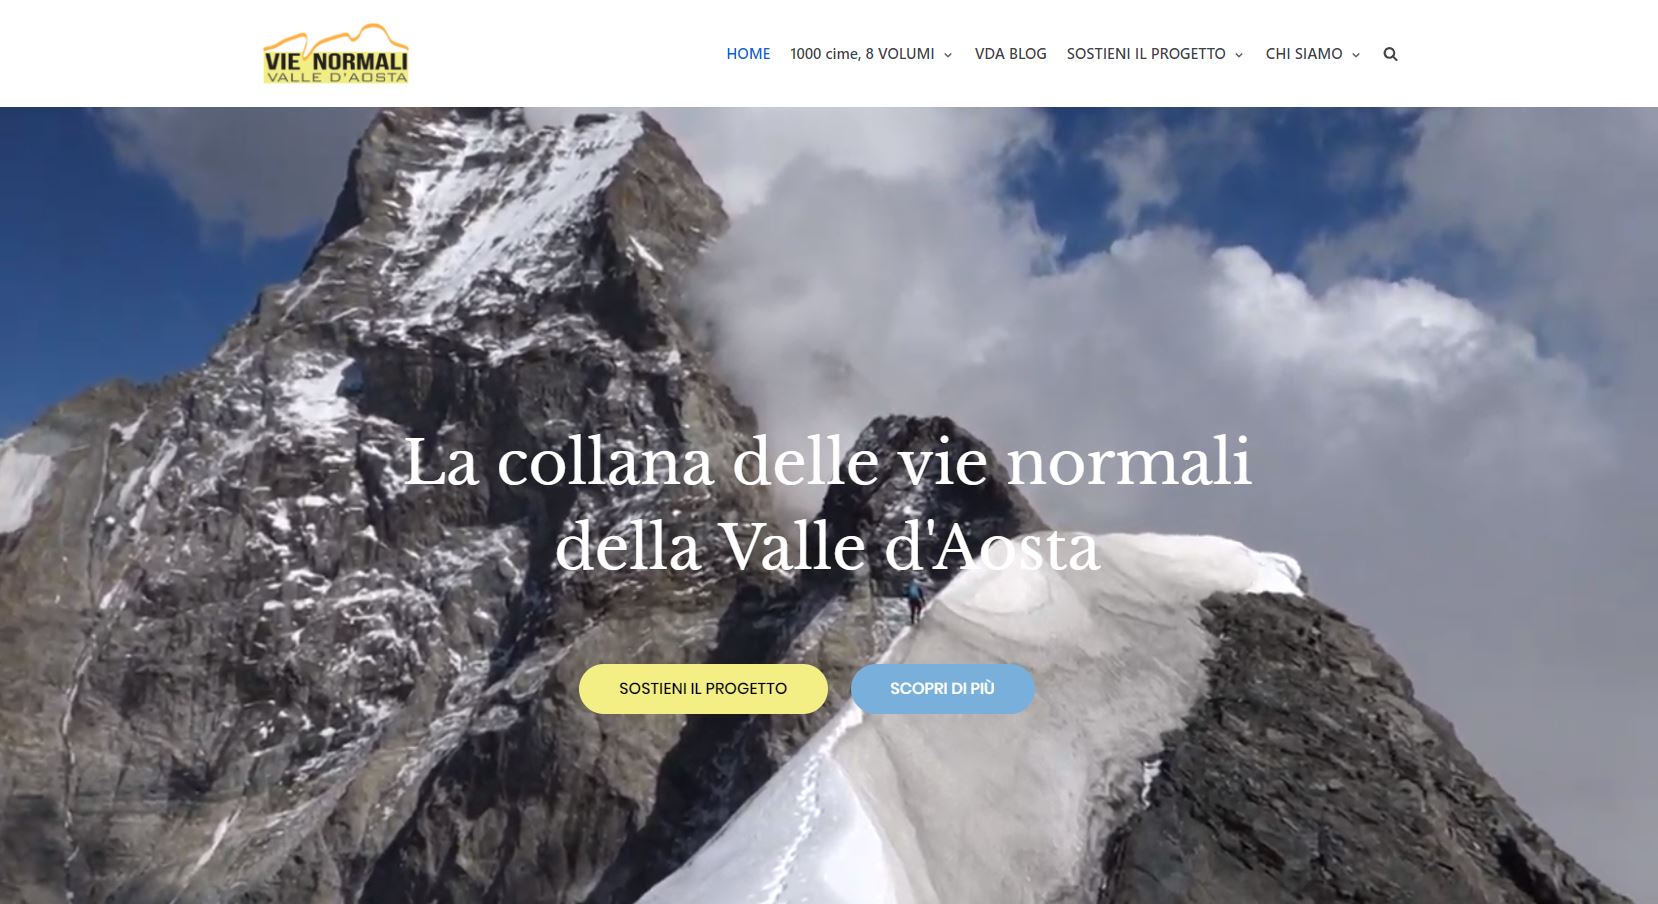 Il sito internet del progetto, www.vienormalivalledaosta.it